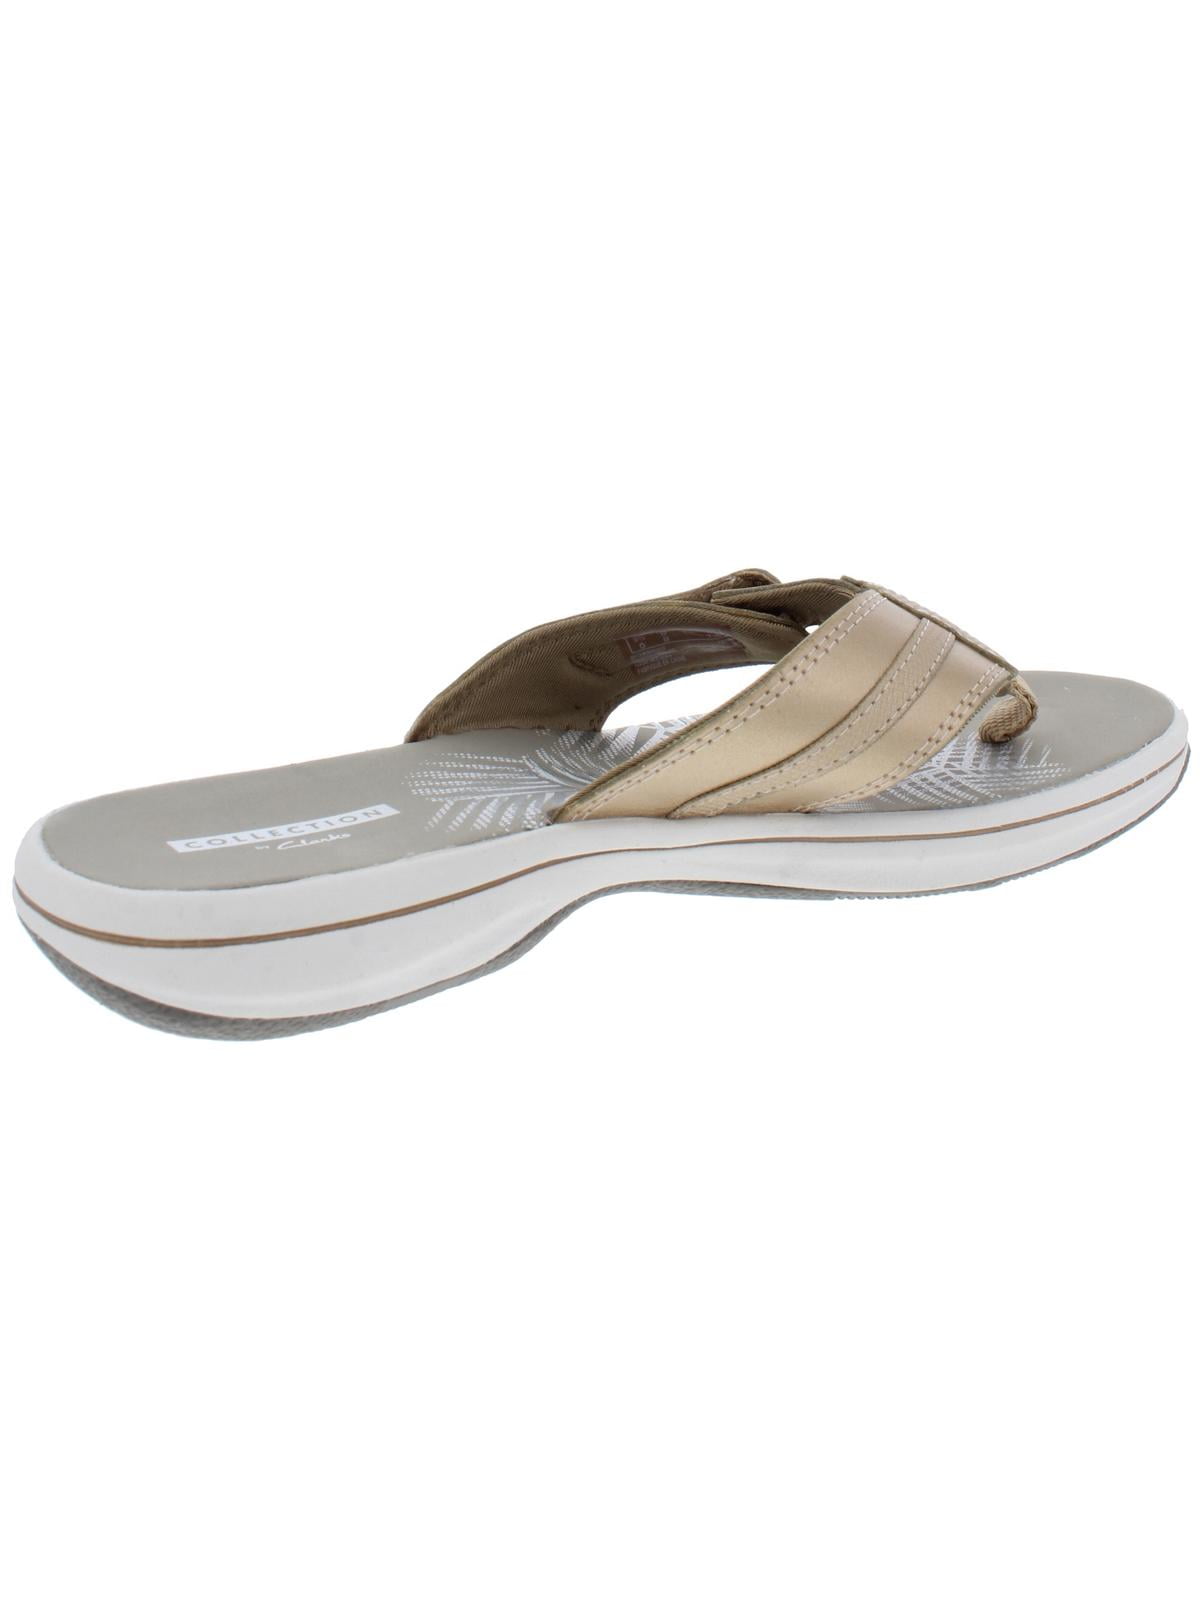 clarks sandals size 5